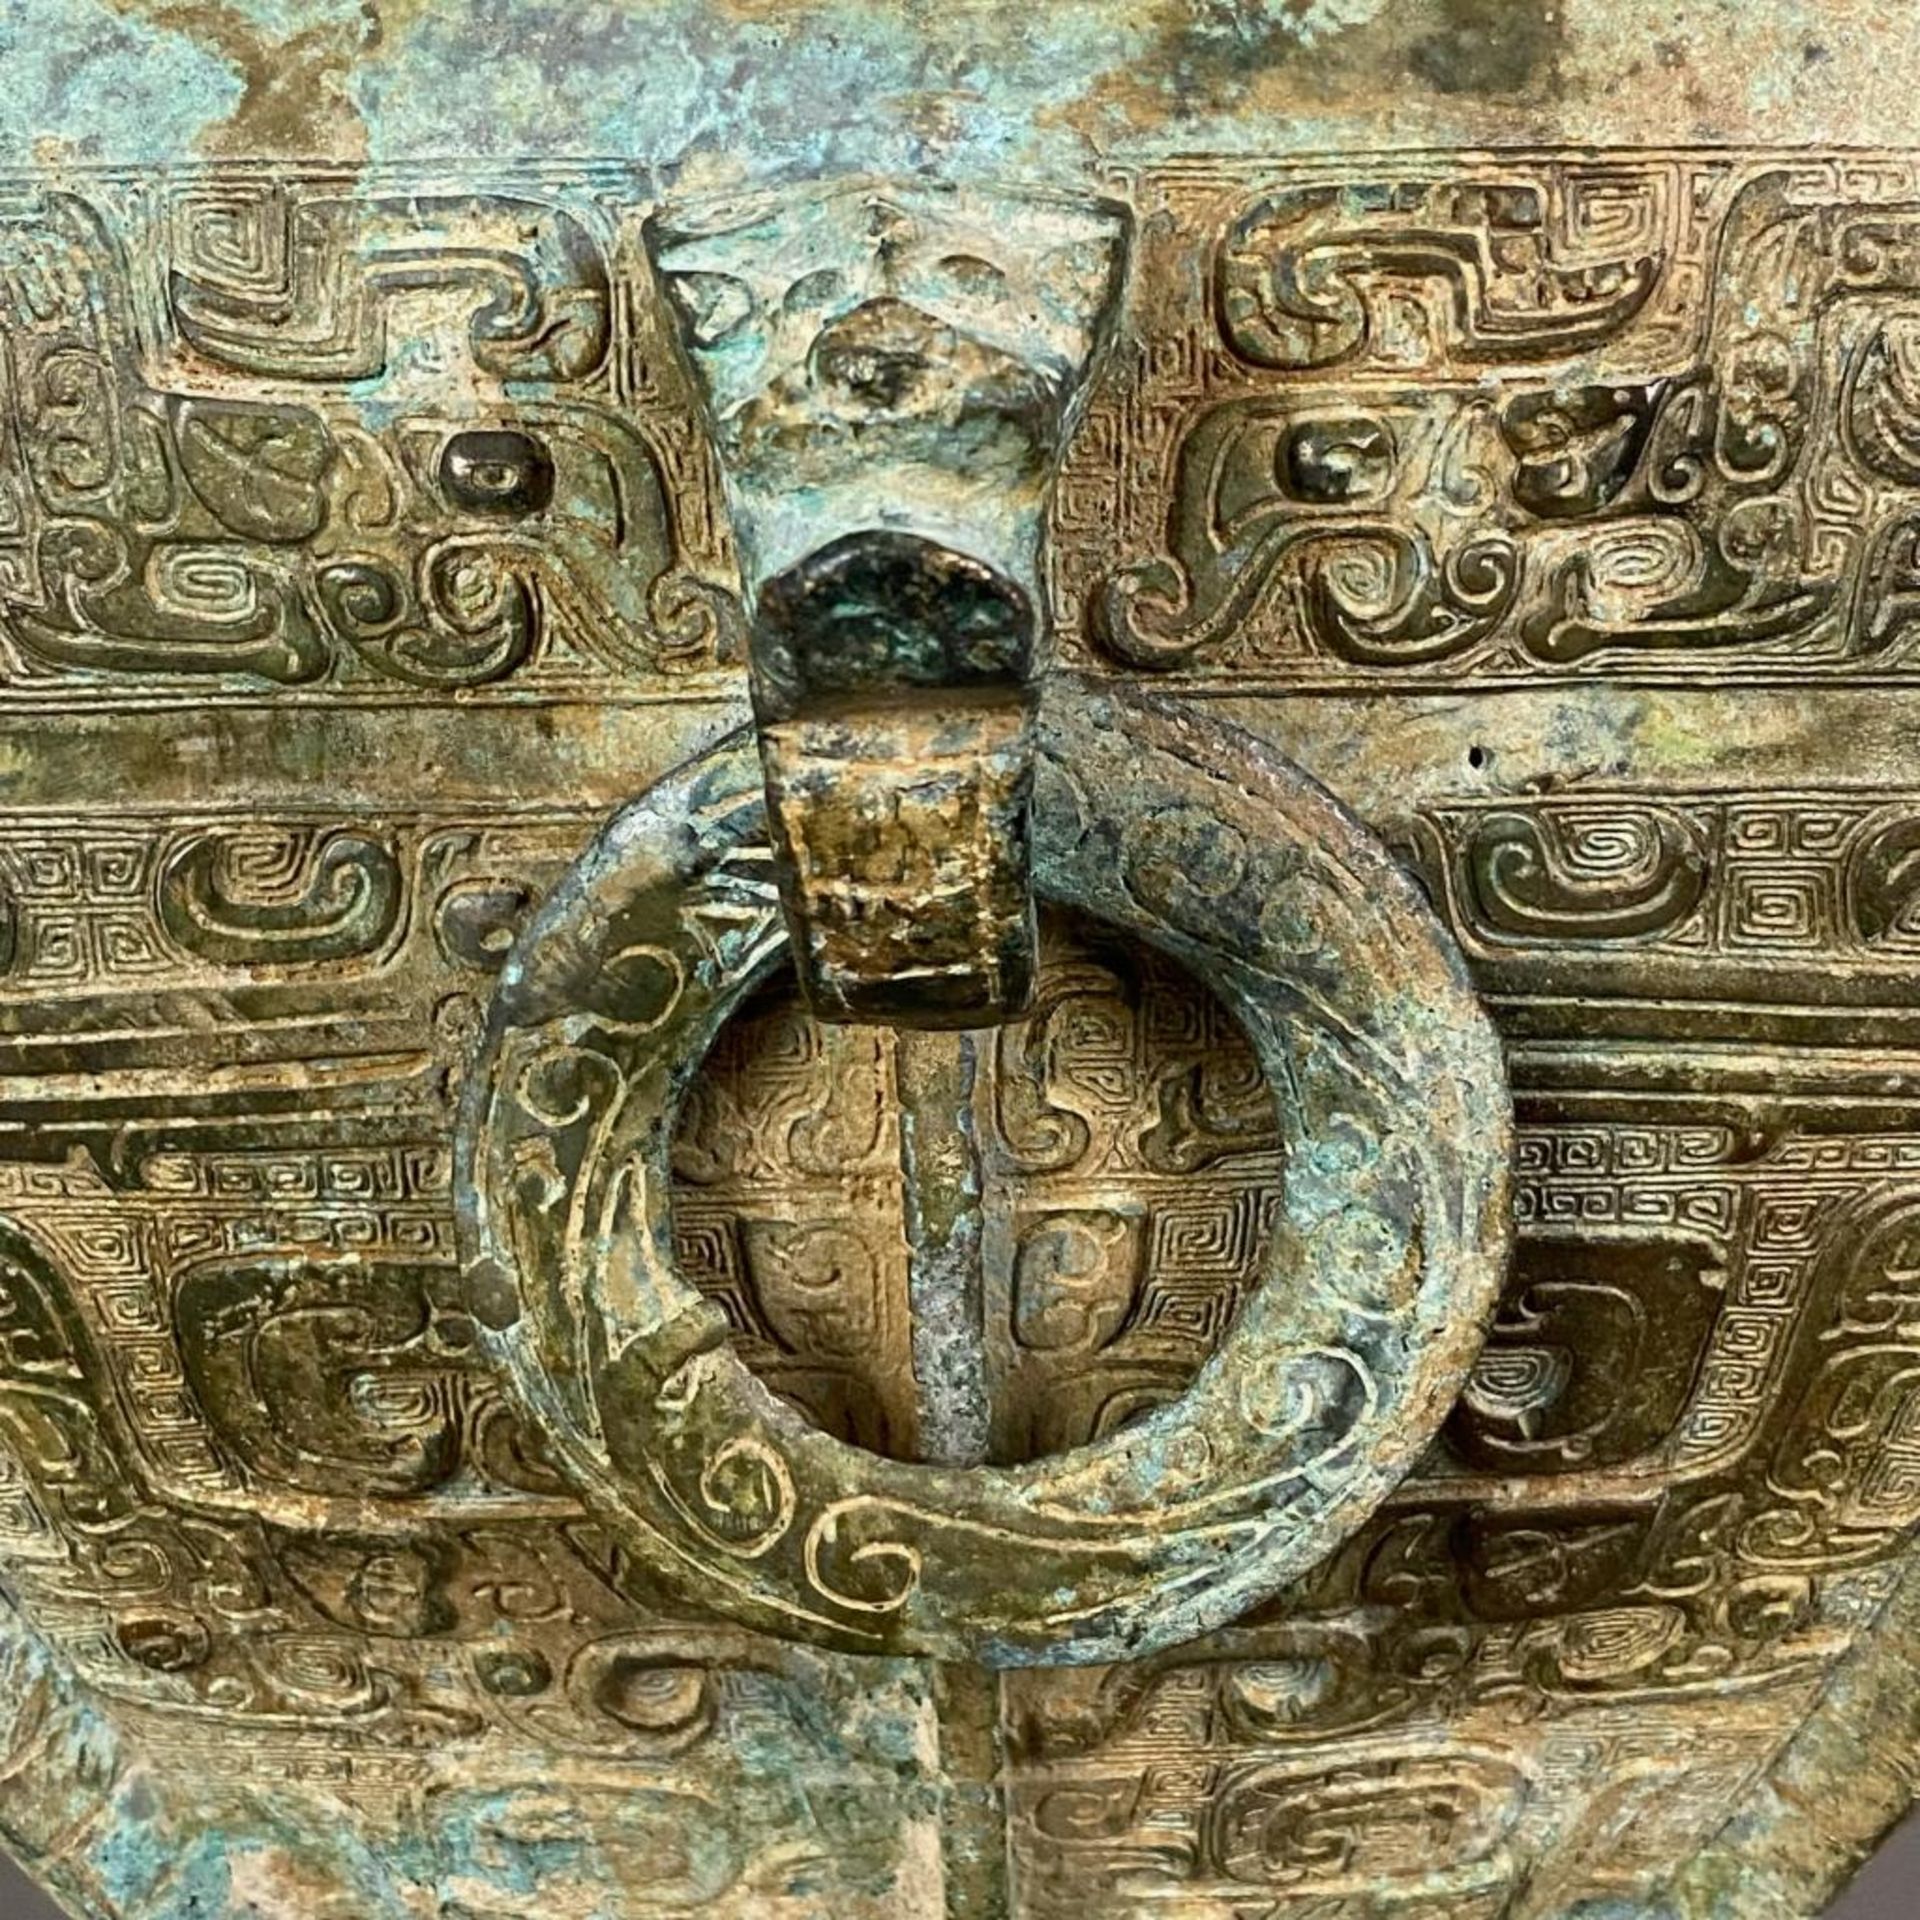 Fanghu-Vase im archaischen Stil - China, grün-braun patinierte Bronze, vierkantige gebauchte Form a - Image 7 of 10